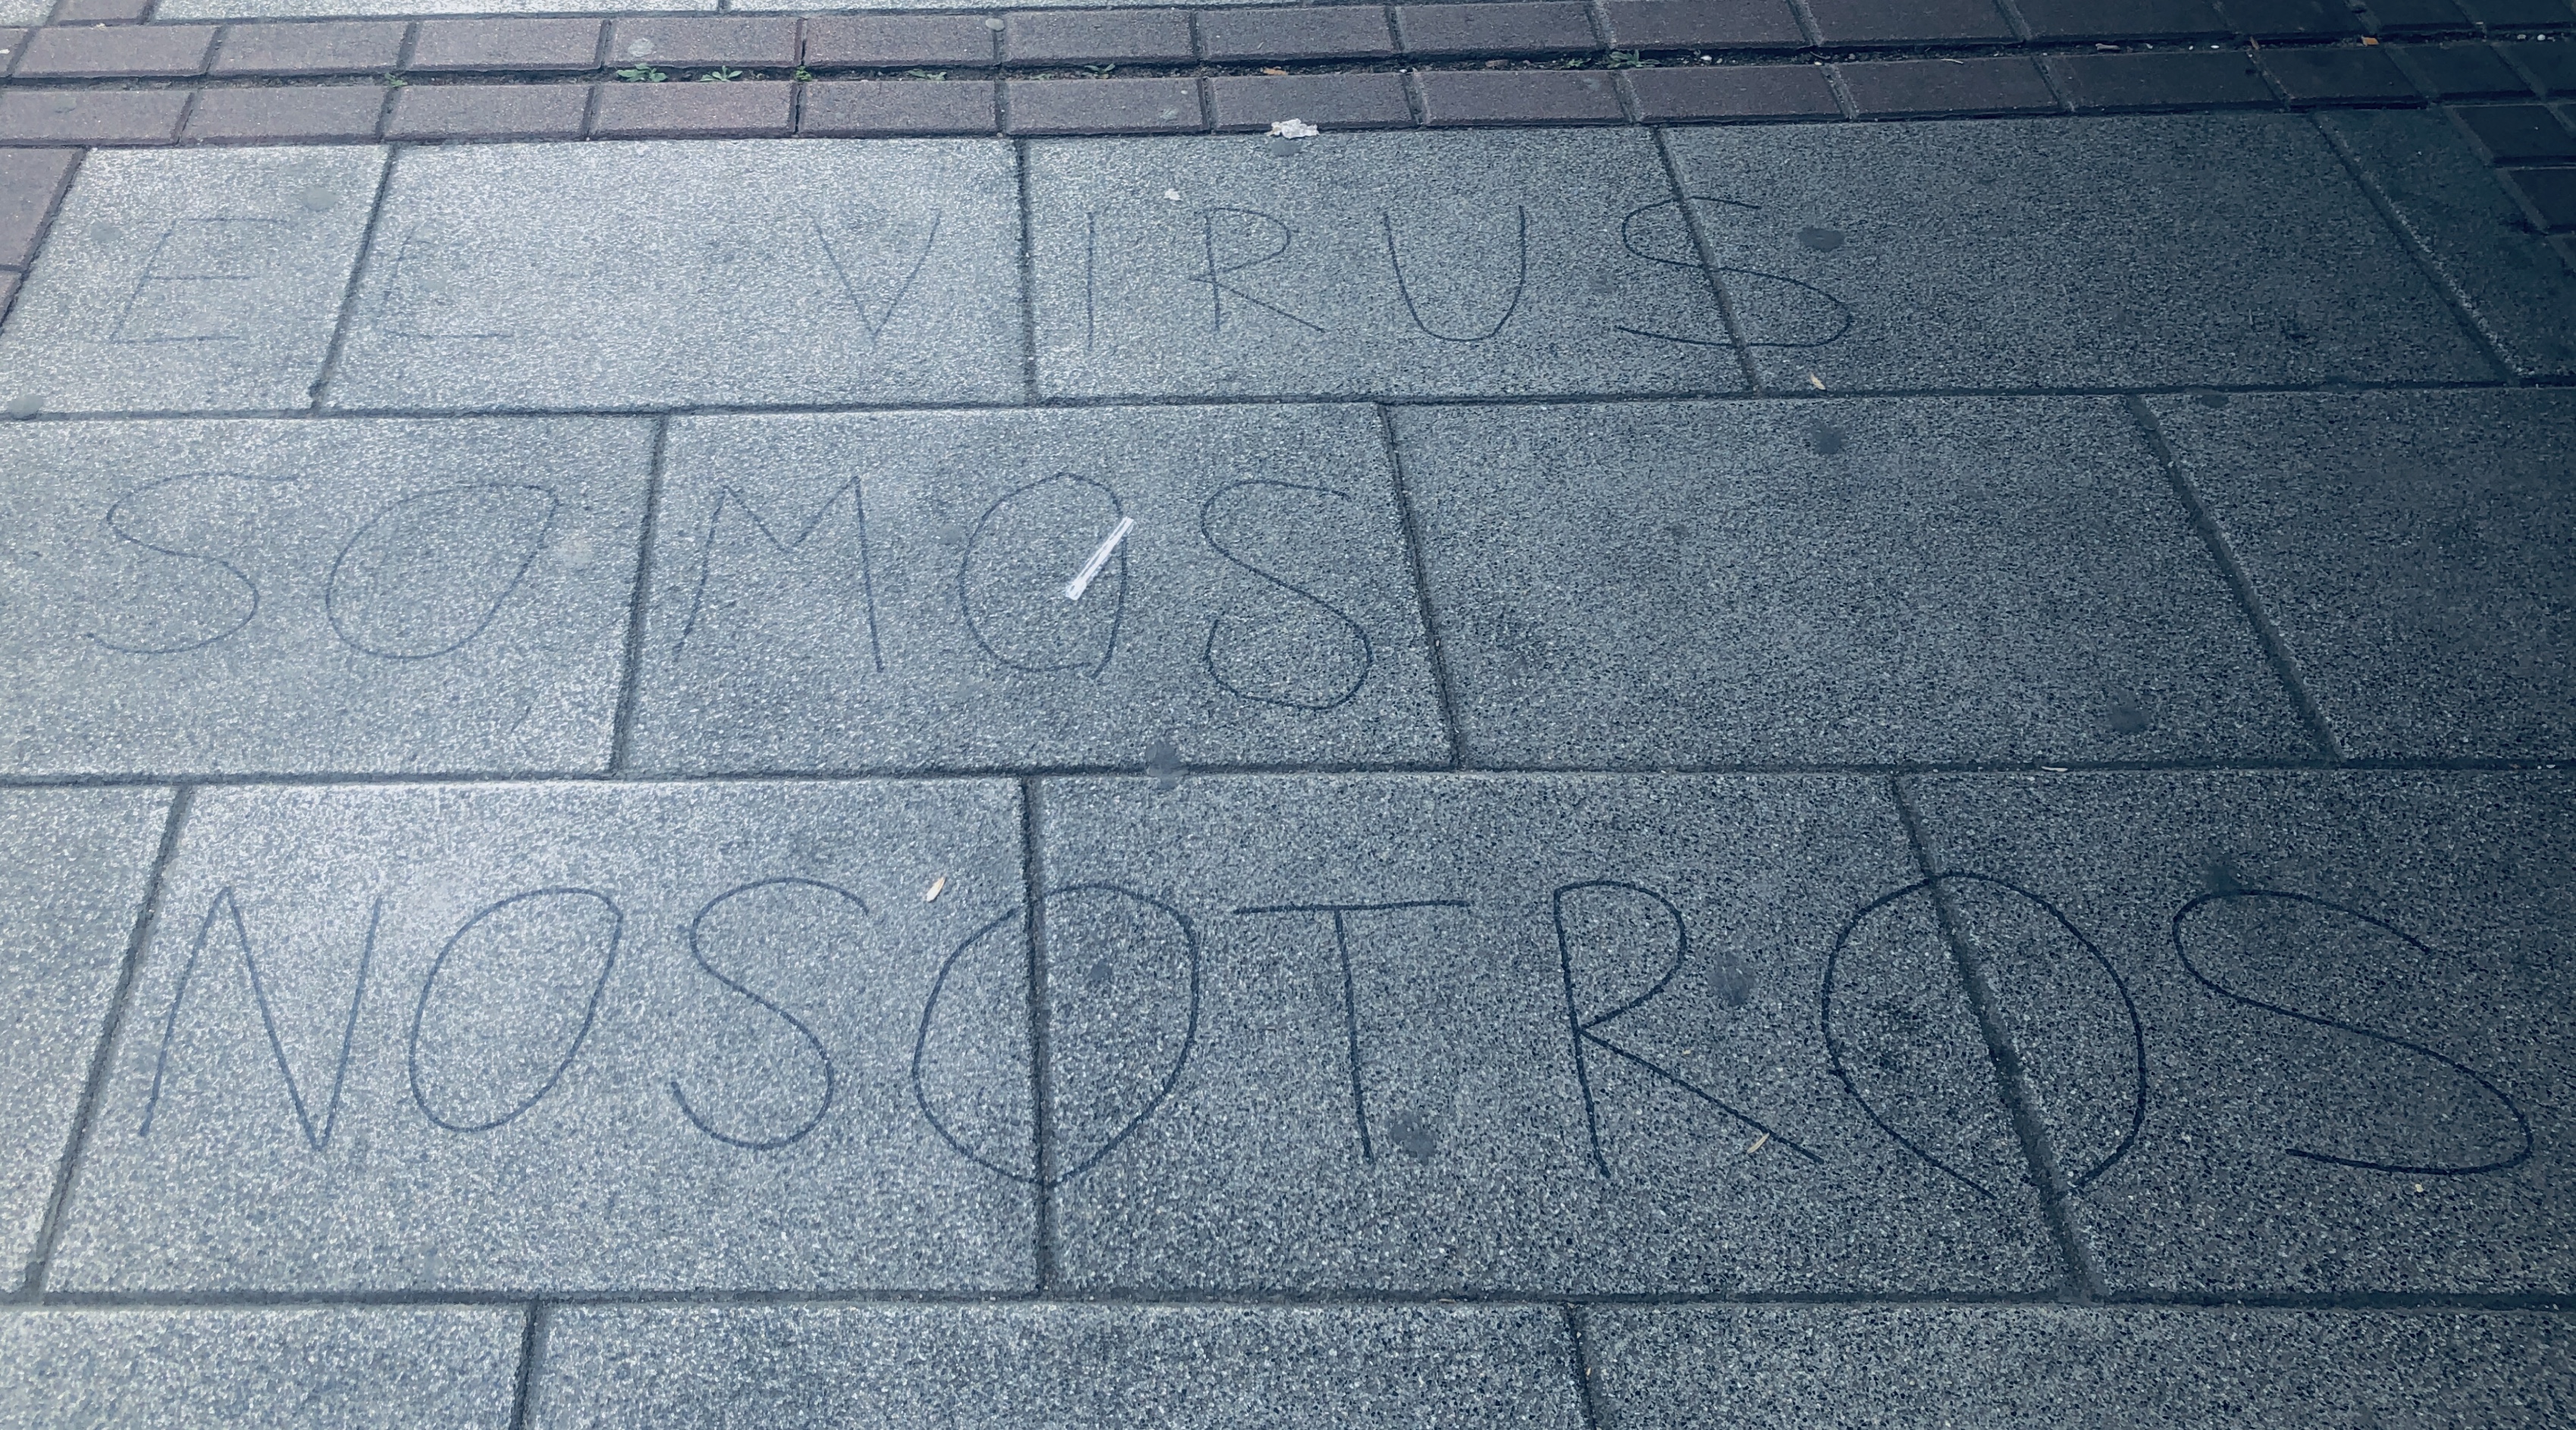 Street writing, “El Virus Somos Nosotros”